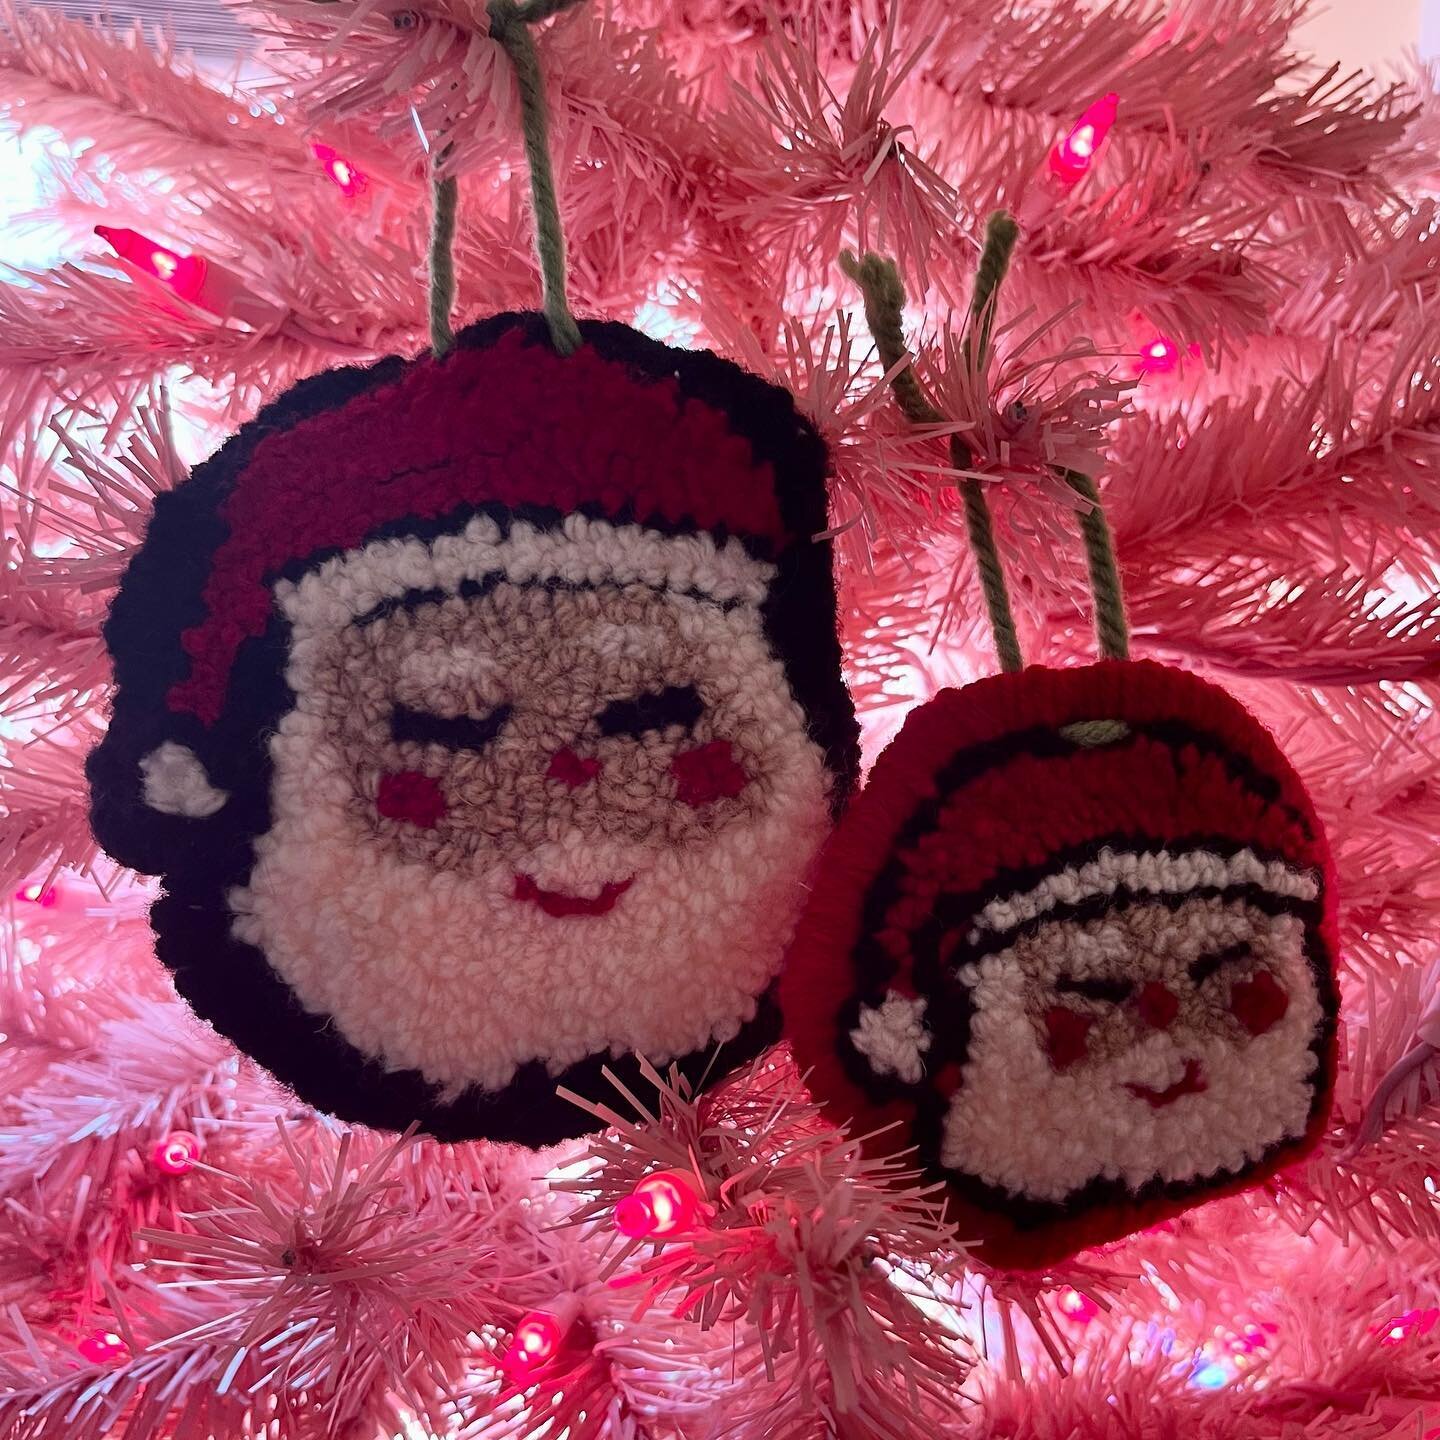 Big boy Santa and lil boi Santa. 

#punchneedle #christmas #santa #oxfordpunchneedle #diy #yarn